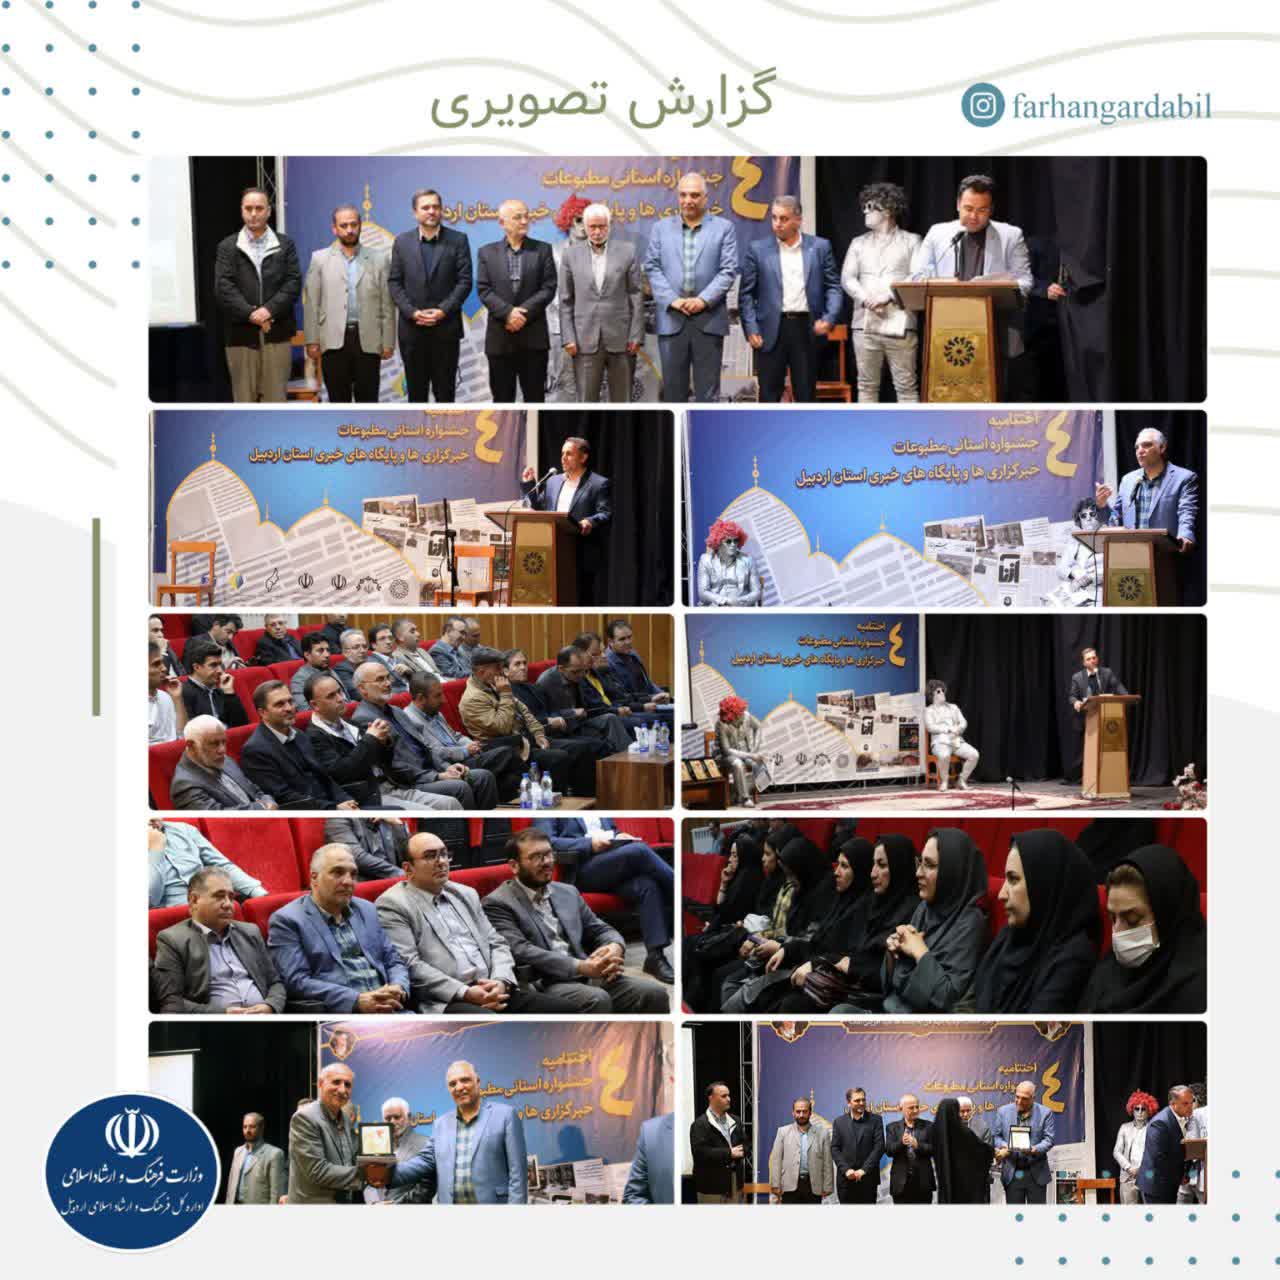 کبری سعادتی از نشریه آزنا برگزیده بخش ویژه در موضوع کنگره ۳۴۰۰ شهید استان